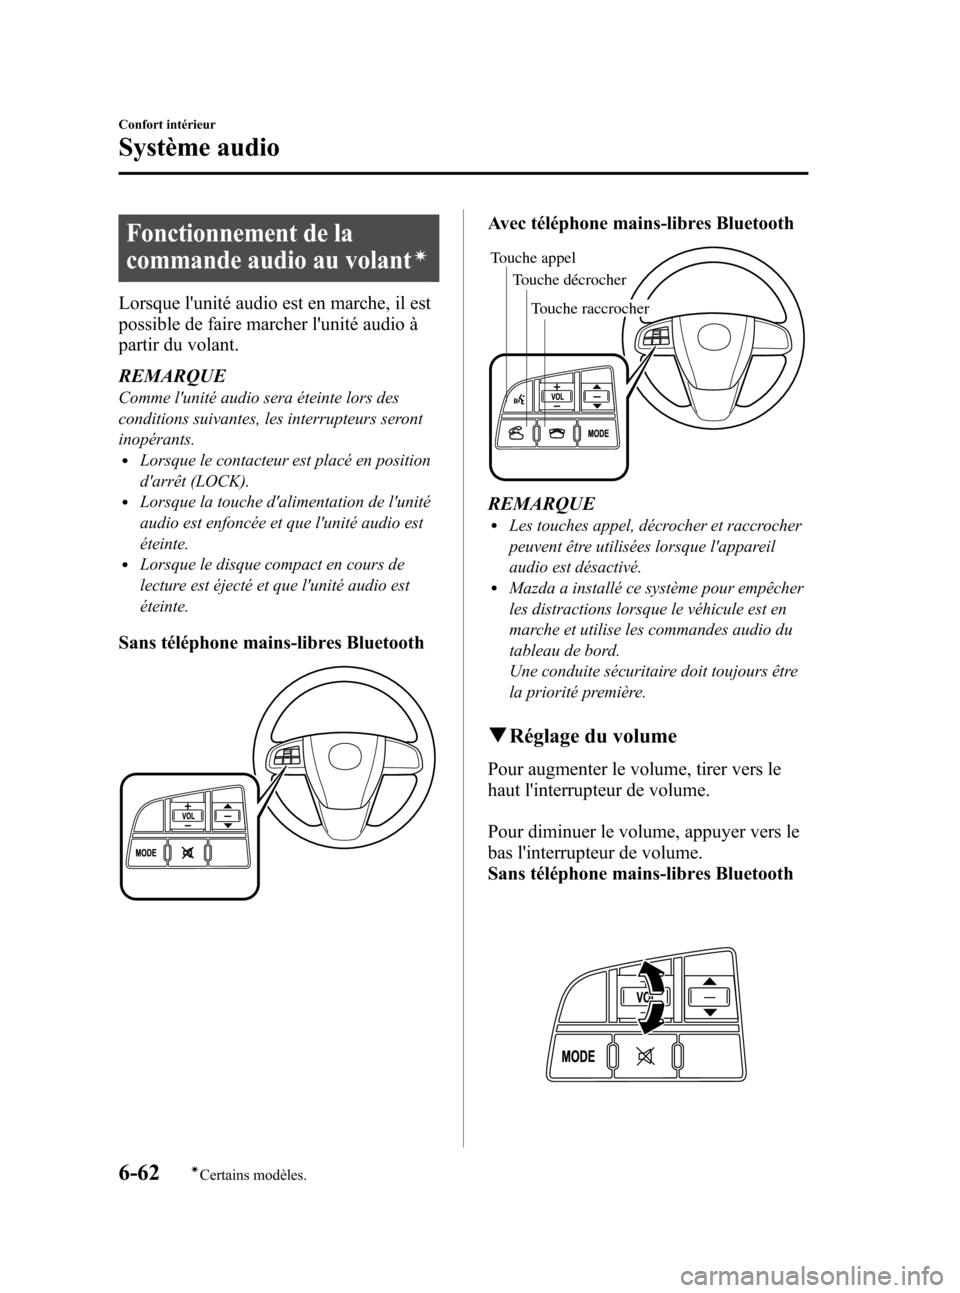 MAZDA MODEL 3 HATCHBACK 2010  Manuel du propriétaire (in French) Black plate (308,1)
Fonctionnement de la
commande audio au volant
í
Lorsque lunité audio est en marche, il est
possible de faire marcher lunité audio à
partir du volant.
REMARQUE
Comme lunité 